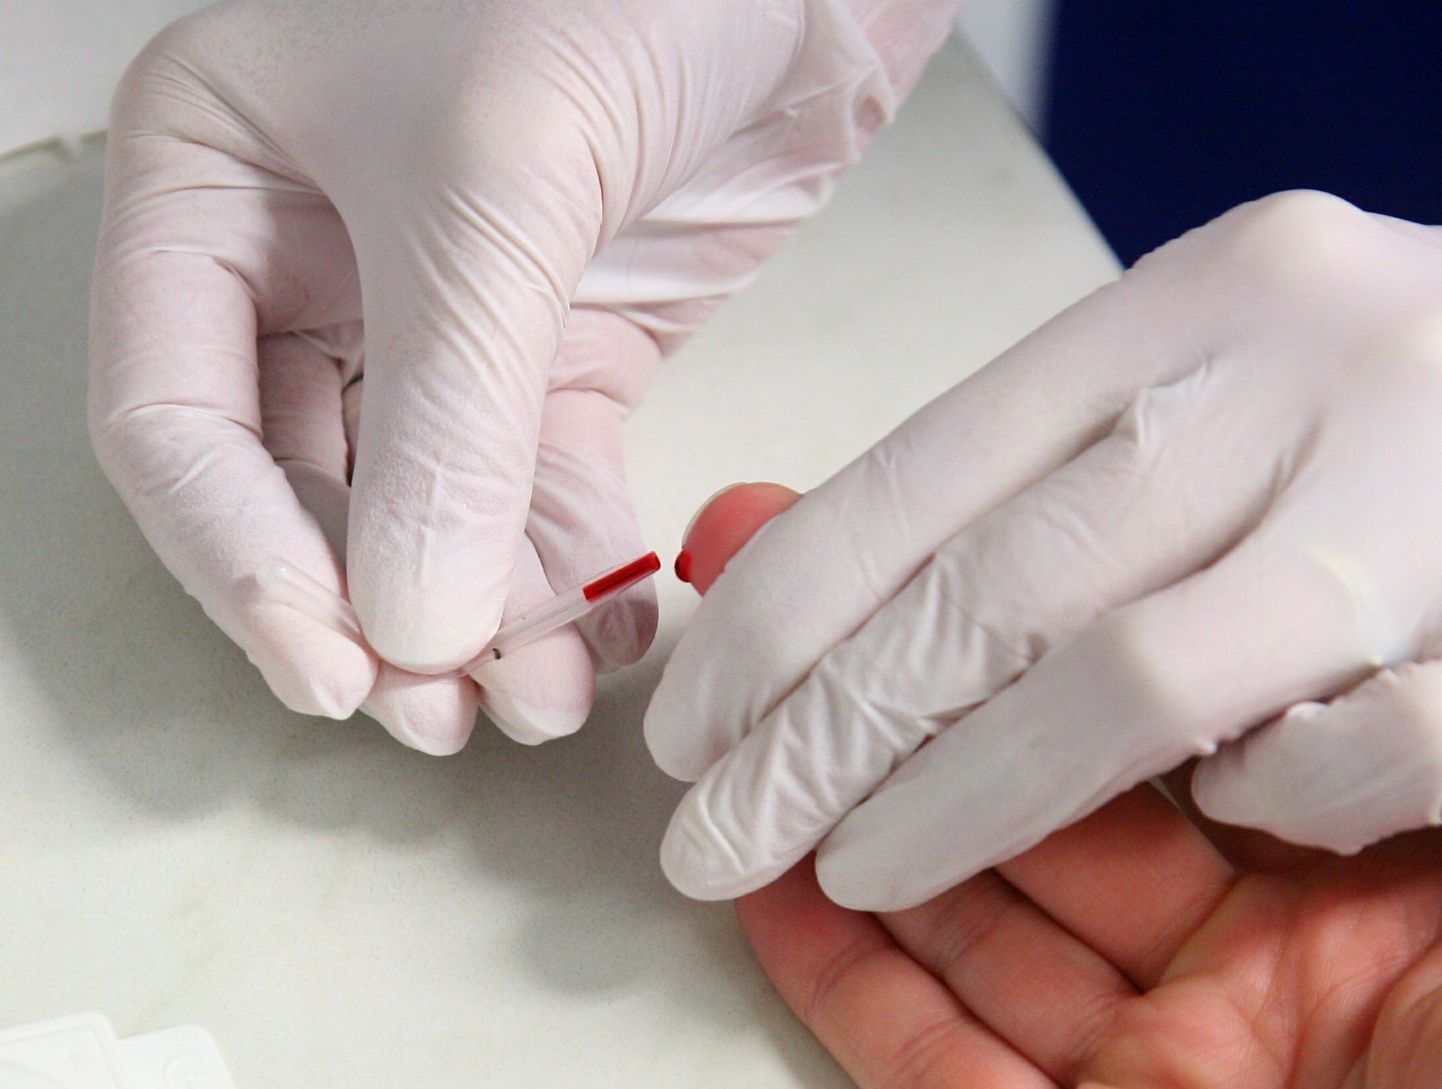 Kiireim viis HIV avastada on teha kiirtest.